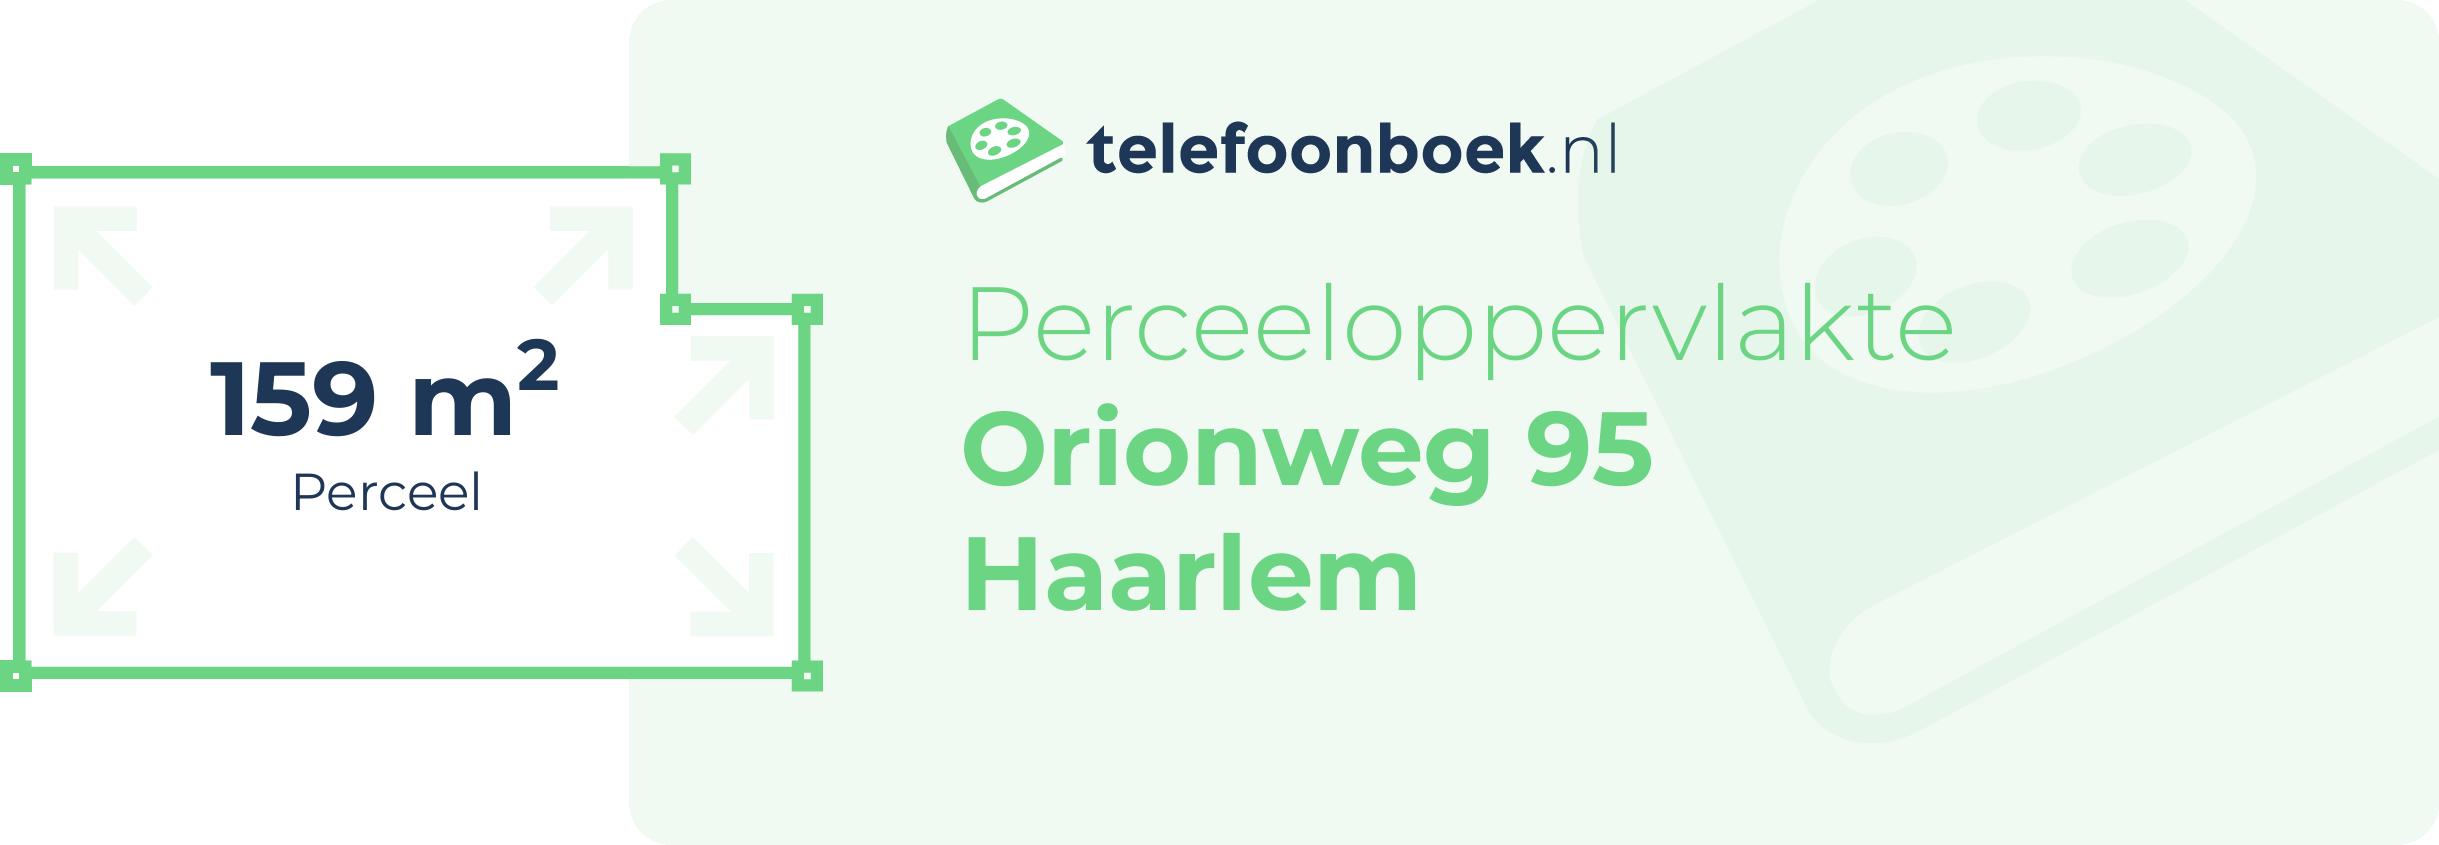 Perceeloppervlakte Orionweg 95 Haarlem